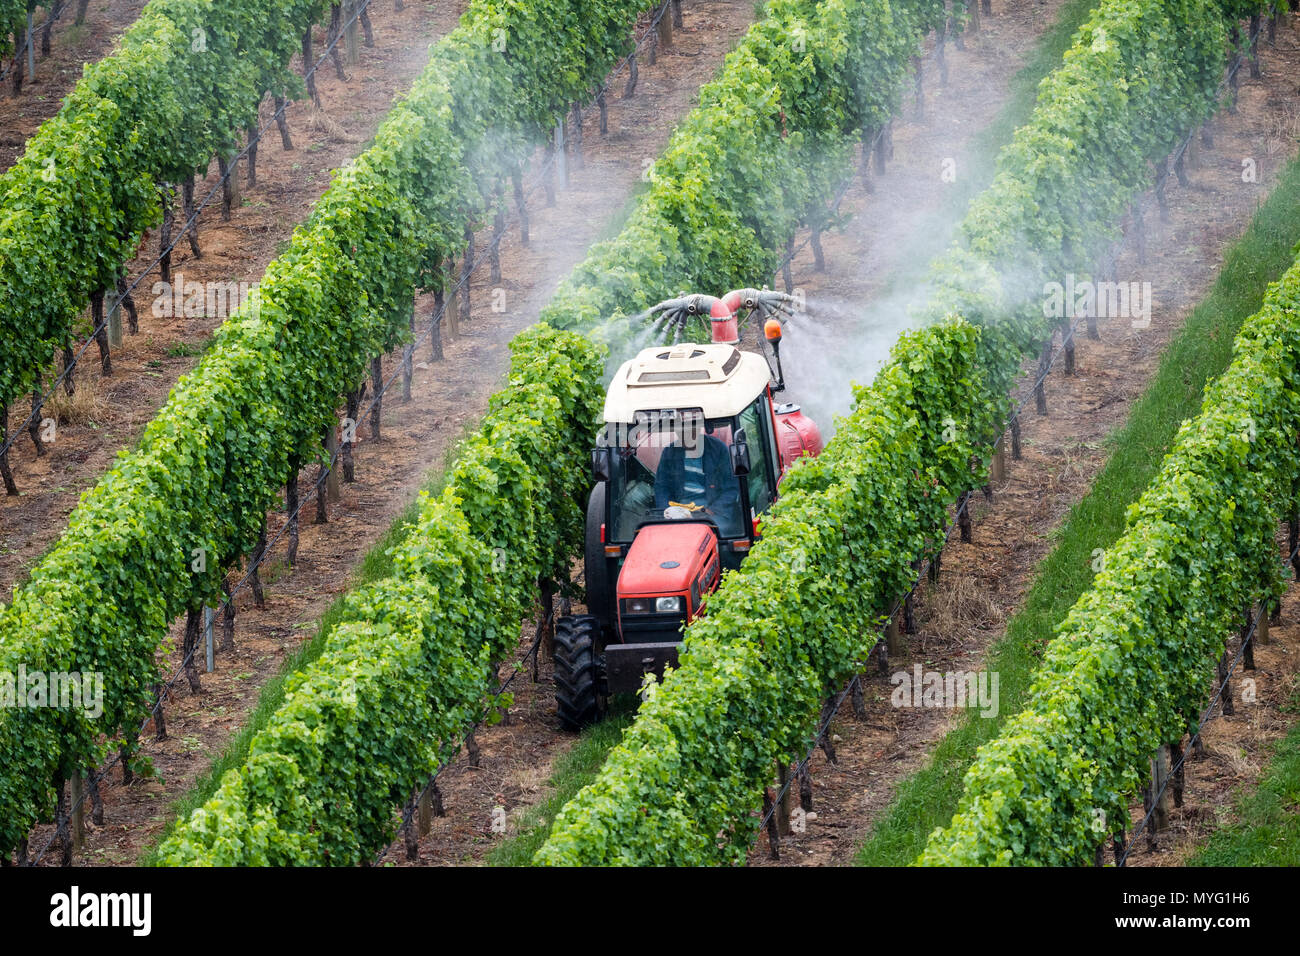 Un tractor pulveriza fertilizante en uvas en un viñedo. Foto de stock